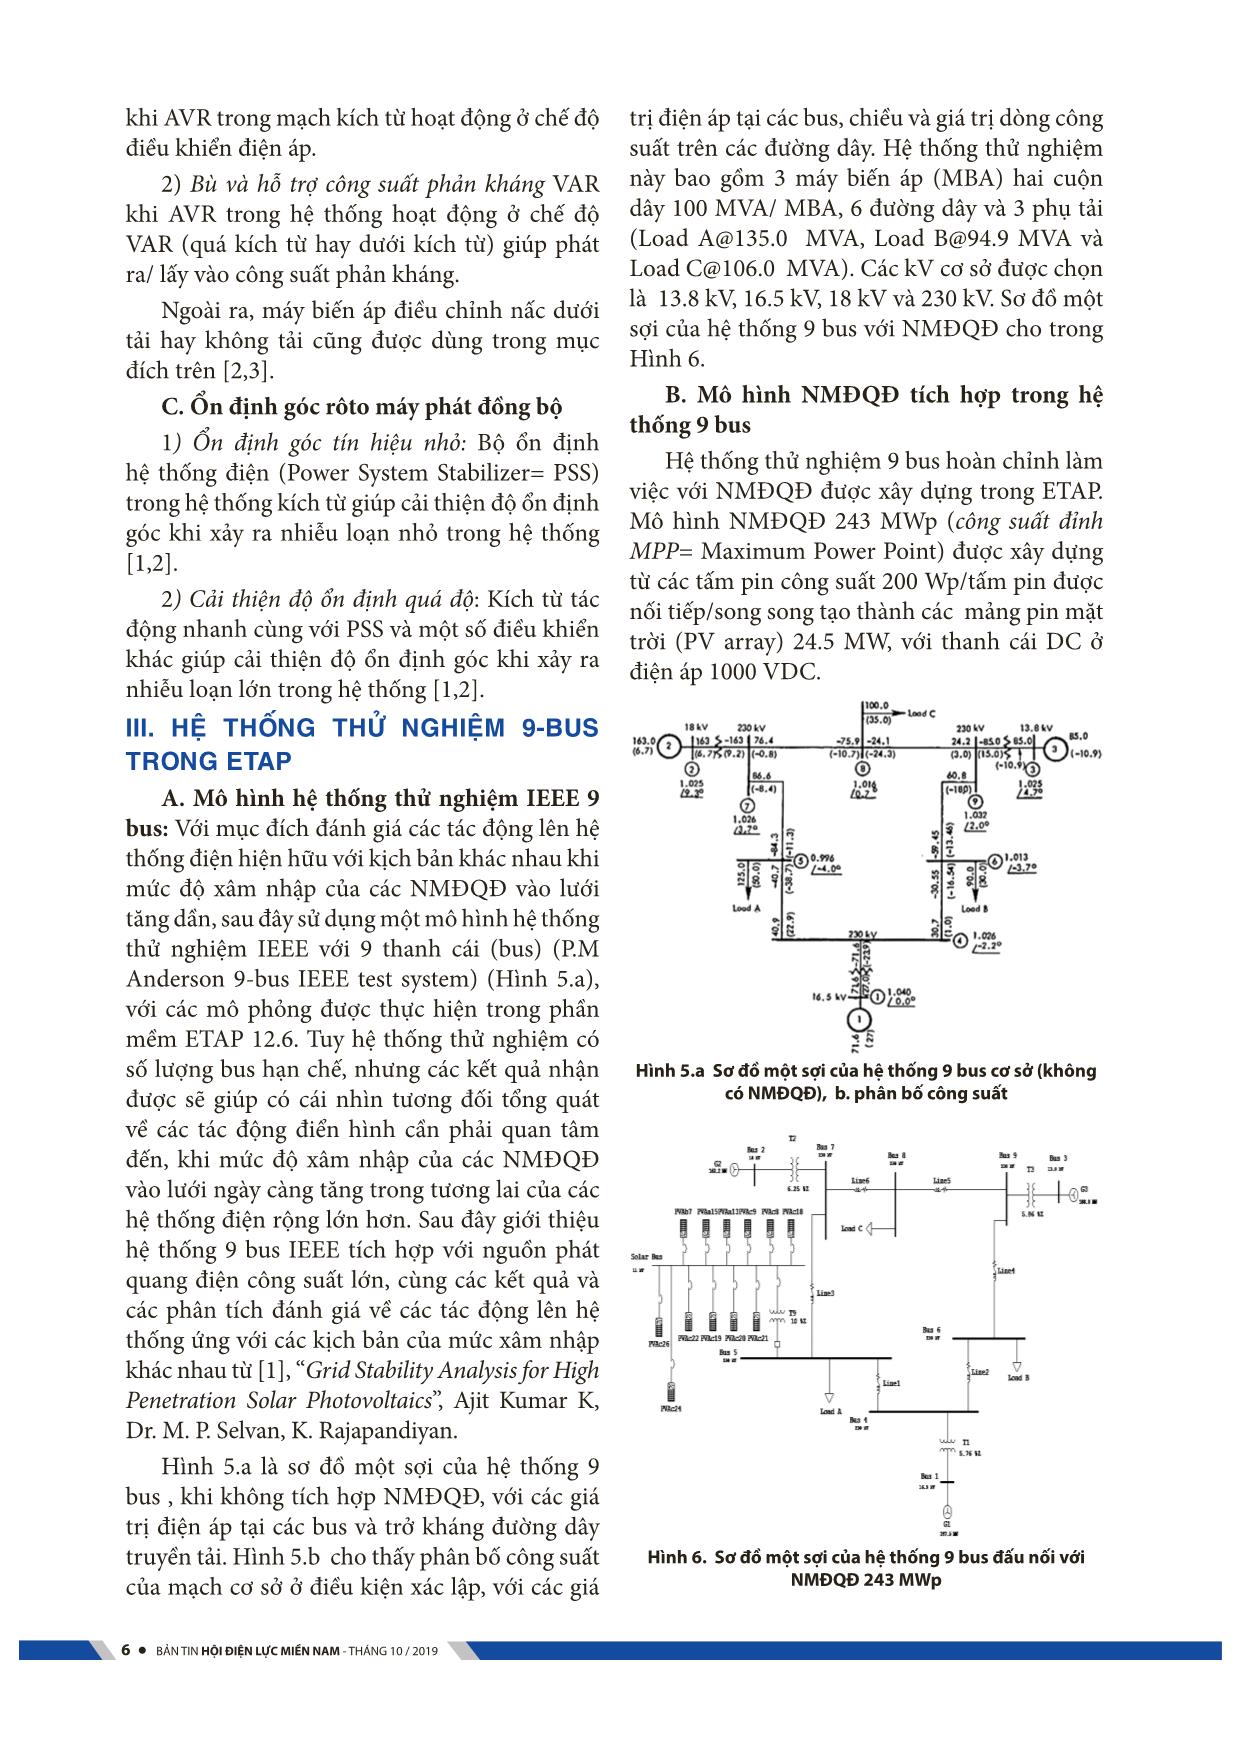 Tác động của mức xâm nhập cao của các nhà máy điện mạt trời kĩ thuật quang điện lên lưới điện trang 6